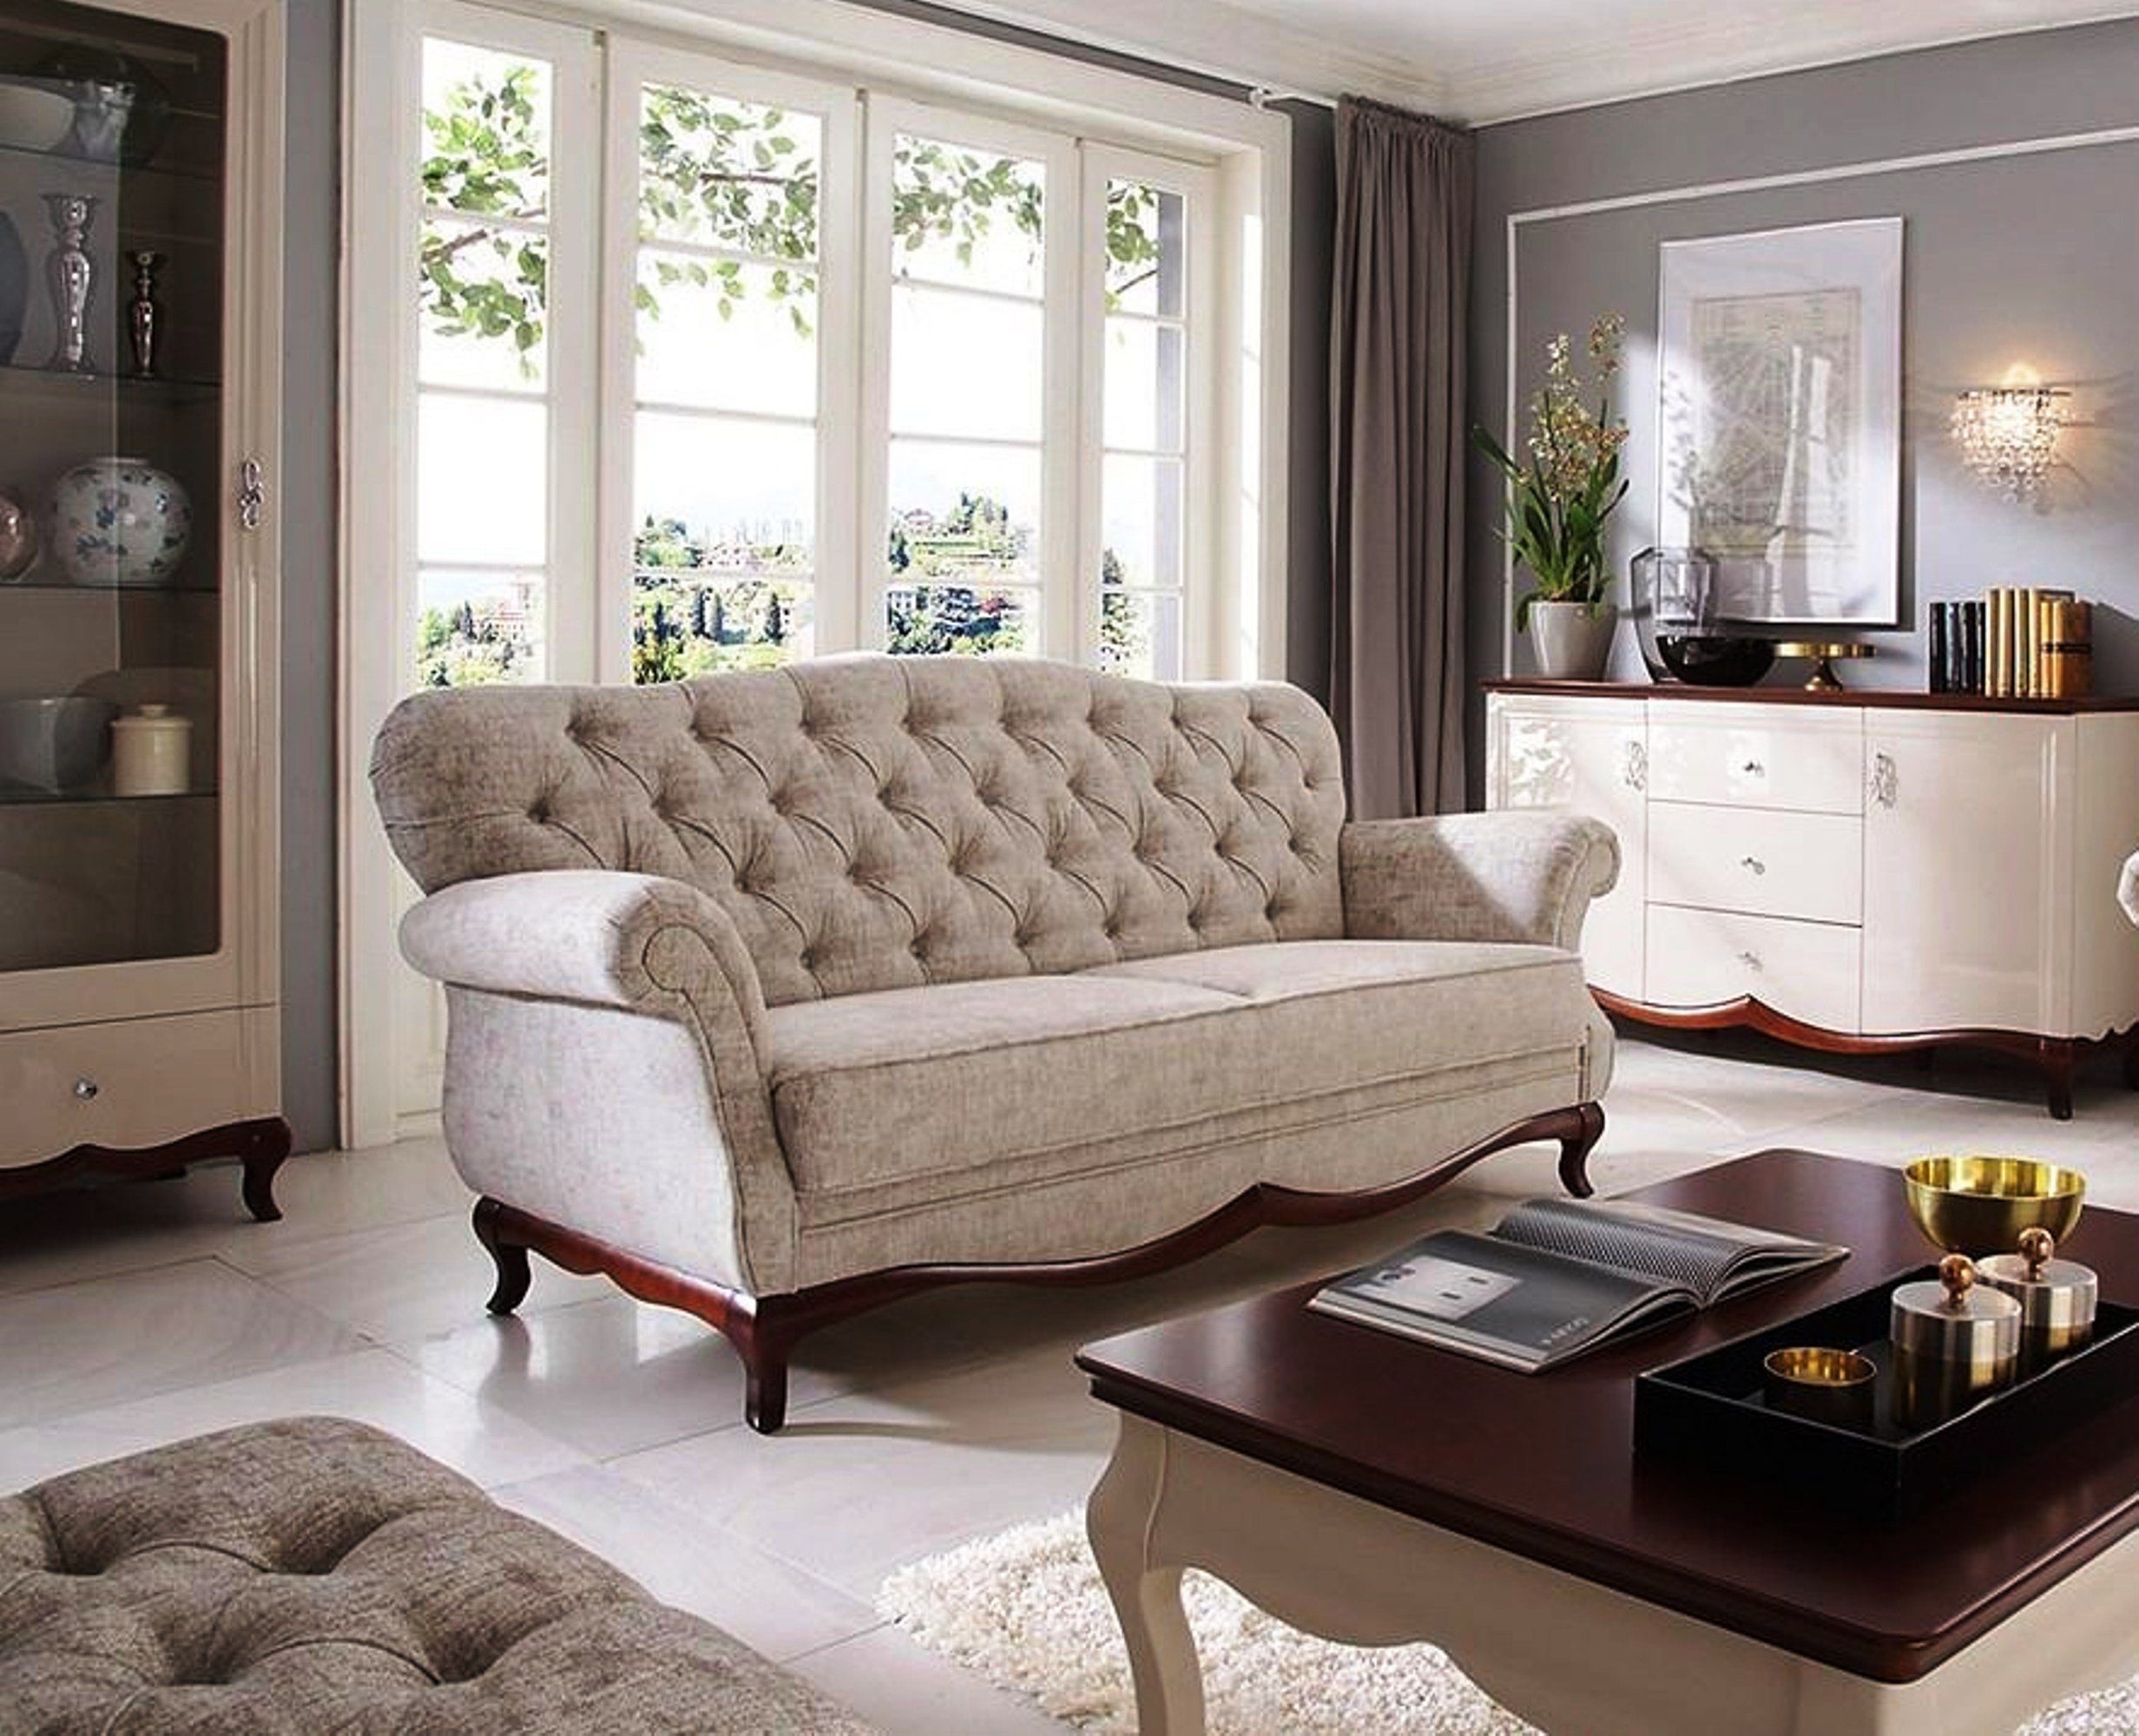 JVmoebel Sofa Luxus Beiger Polster Neu, in Europe stilvolle Zweisitzer Moderner Möbel Made